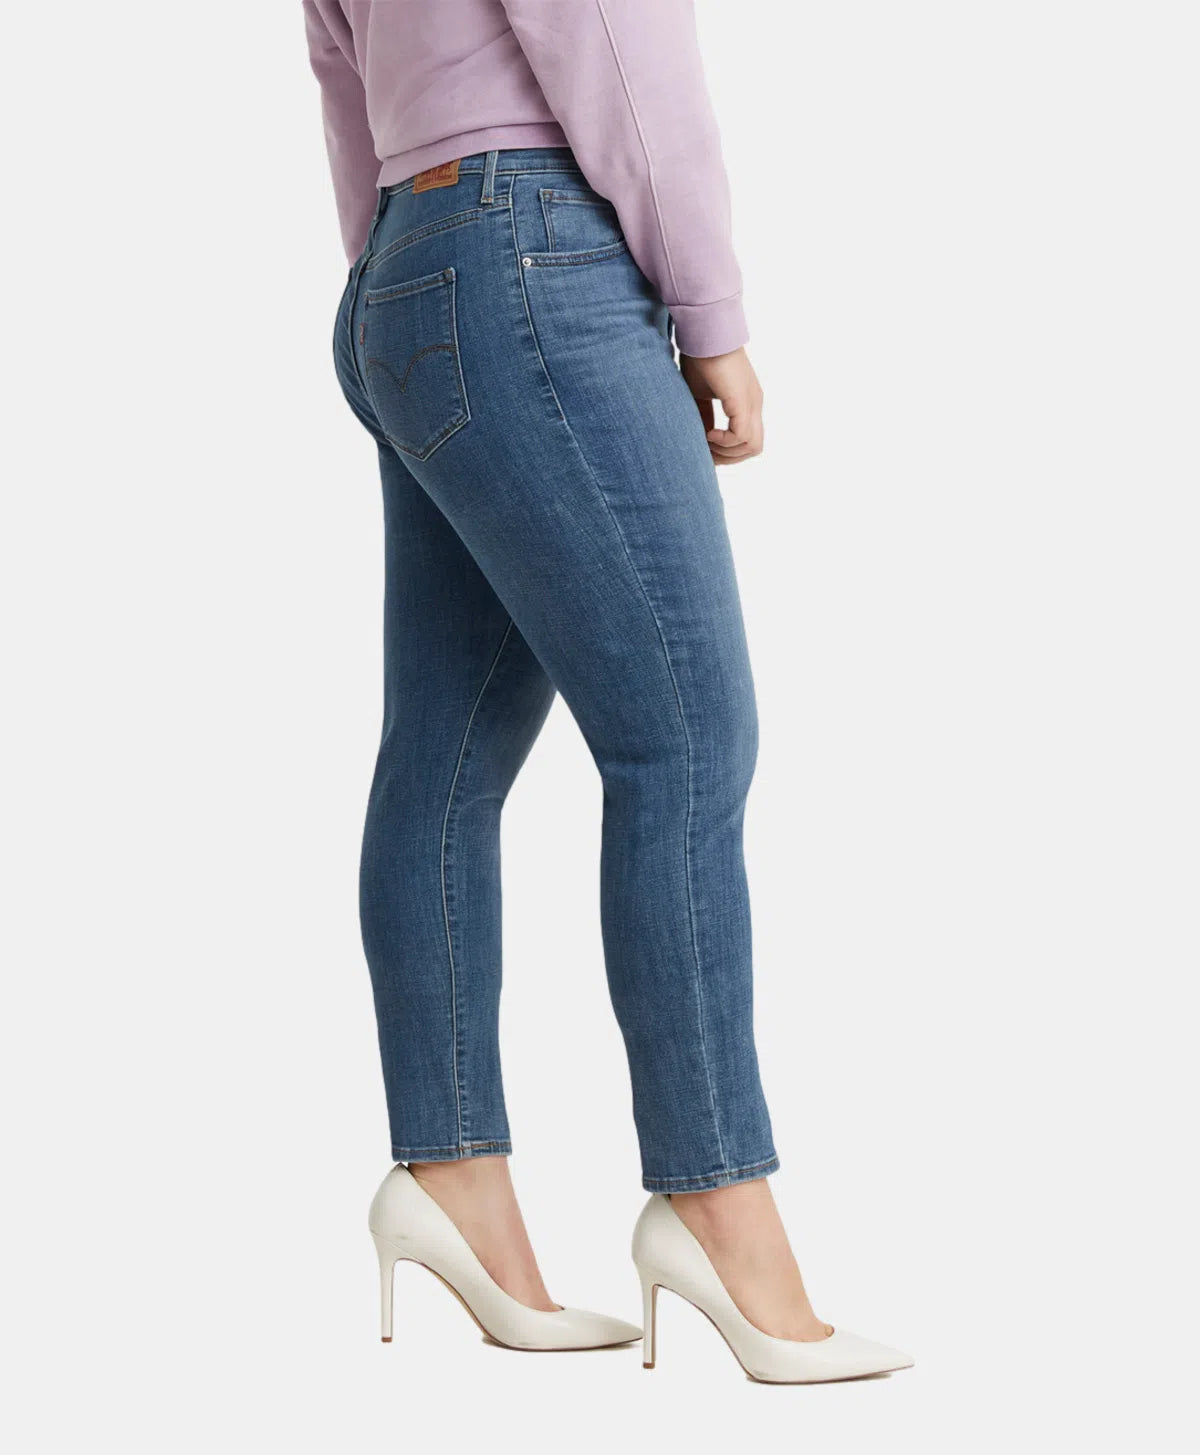 Jeans Levi's 721 filiforme Taille plus bleu pour femme